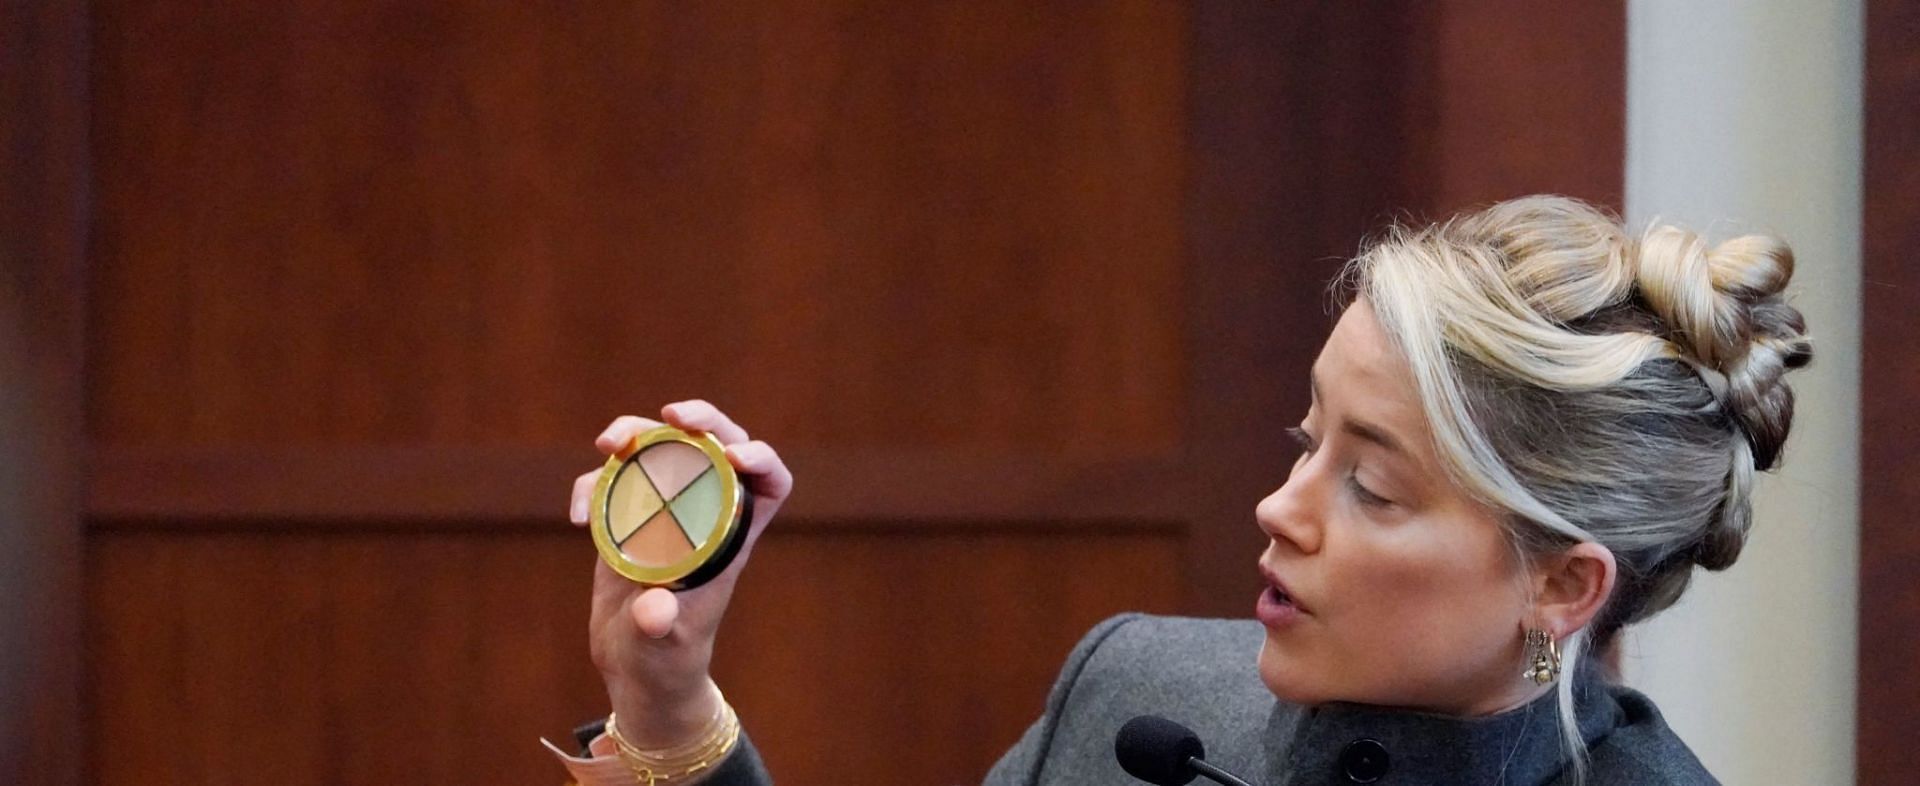 Twitter mocked Amber Heard for her bruise kit testimony (Image via Steve Helber/Getty Images)